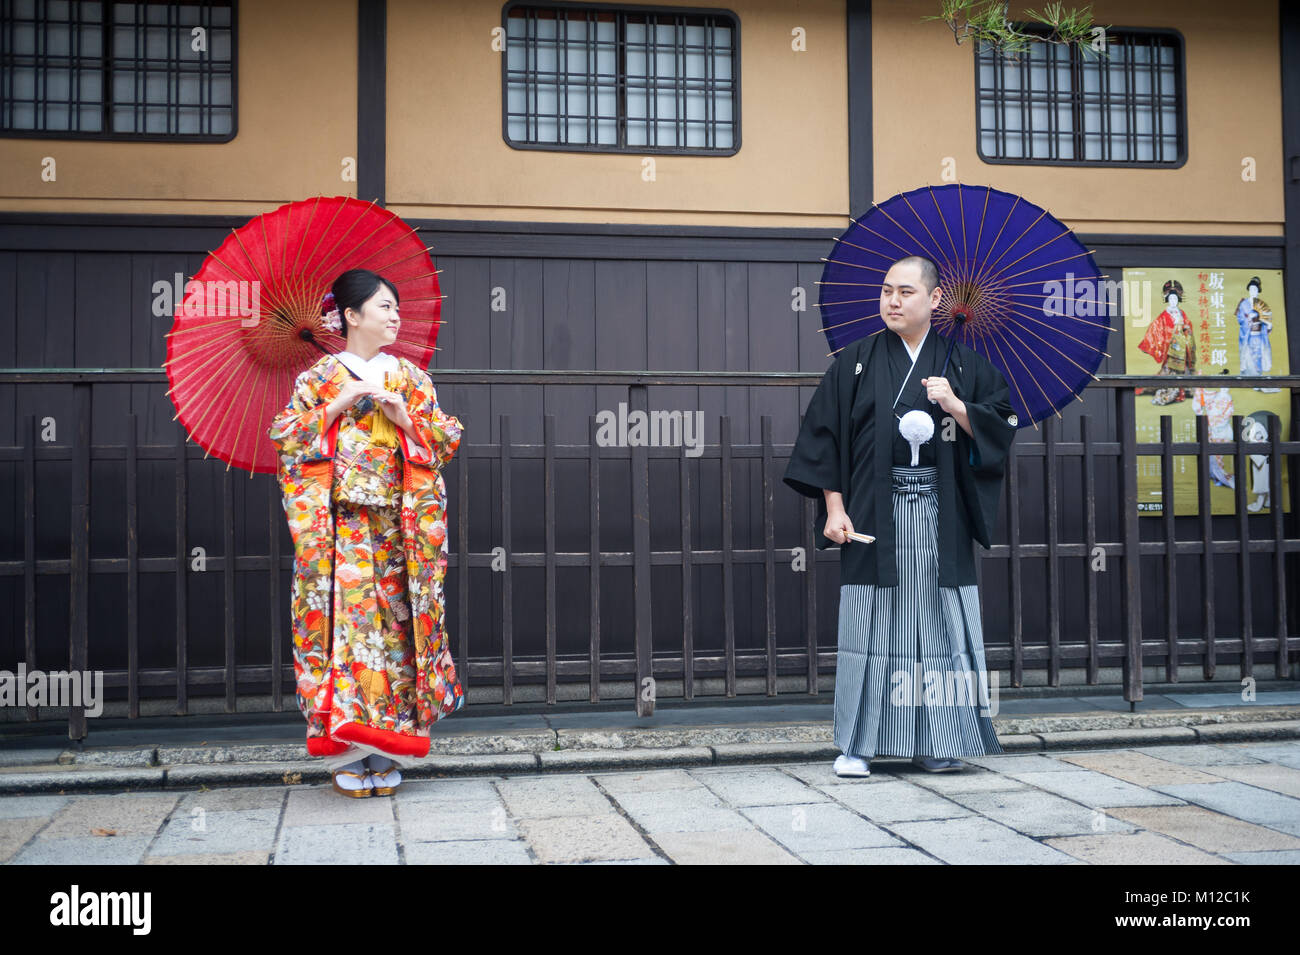 25.12.2017, Kyoto, Giappone, Asia - una giovane coppia che indossa gli abiti tradizionali comporta per un ritratto nella vecchia città di Kyoto. Foto Stock